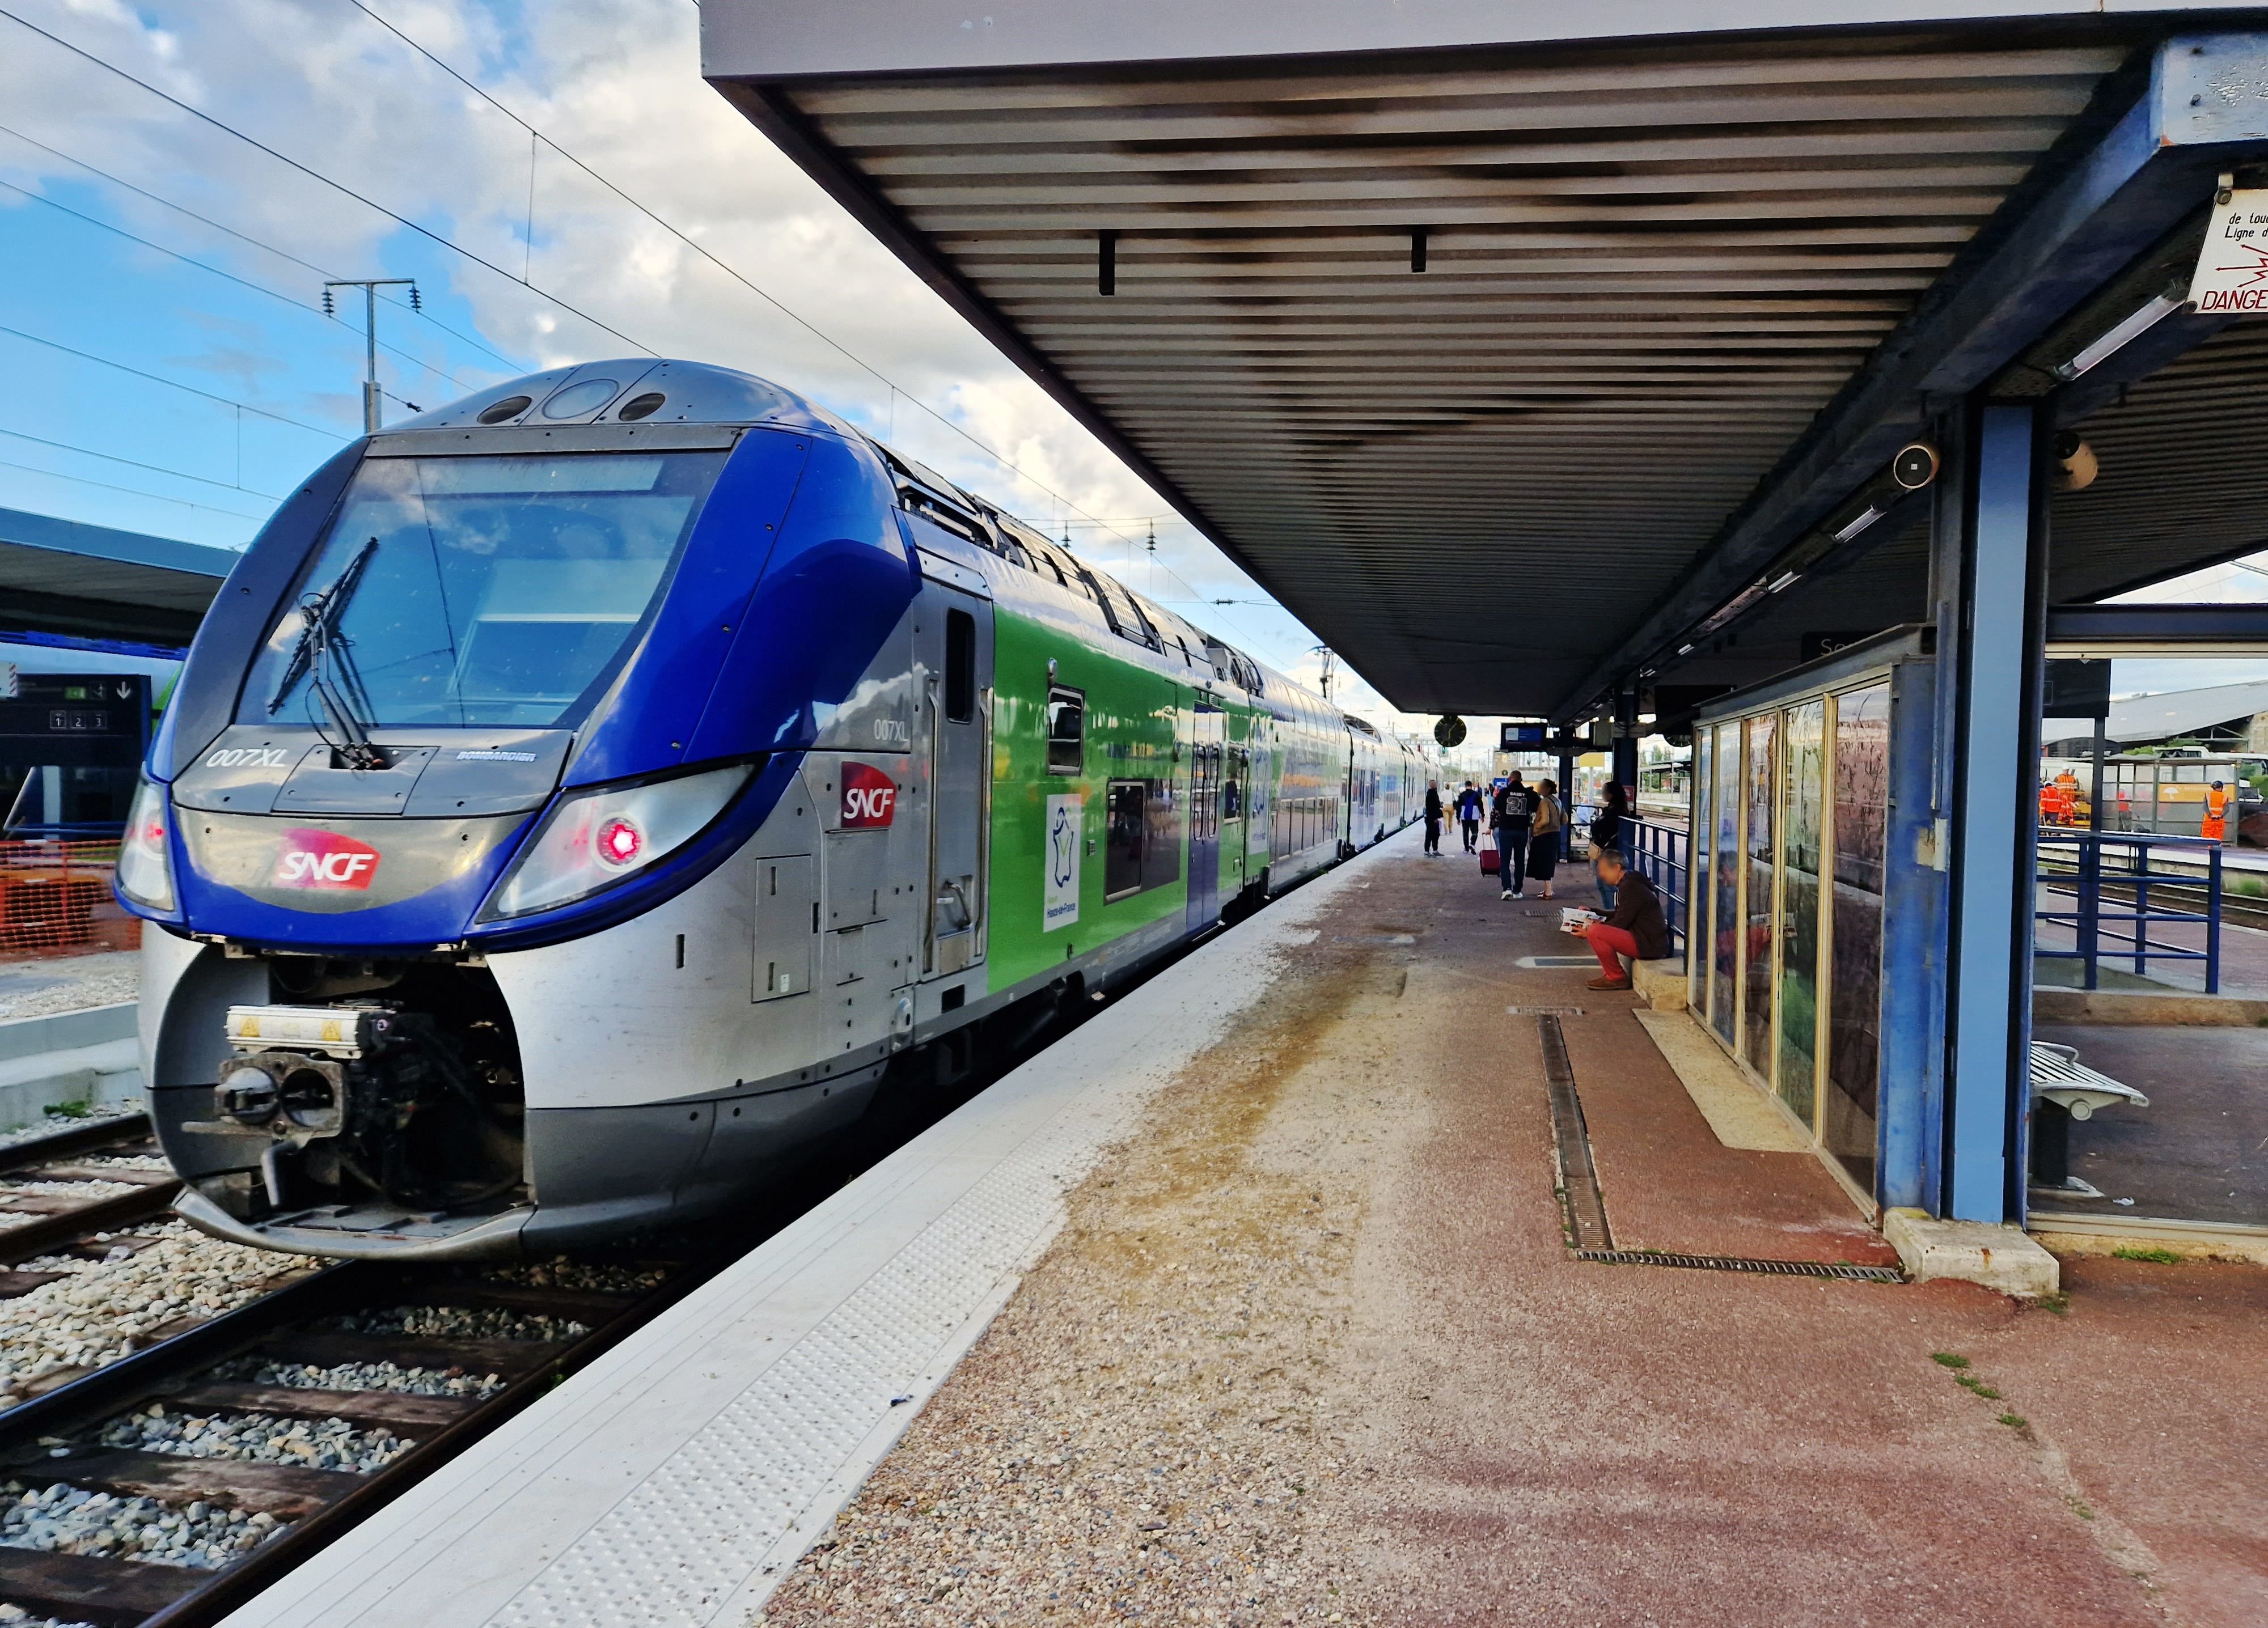 La SNCF a décidé d’interrompre totalement le trafic des TER en région Bretagne, Centre-Val de Loire, Normandie et Pays de la Loire de mercredi soir à vendredi matin. LP/Julien Barbare